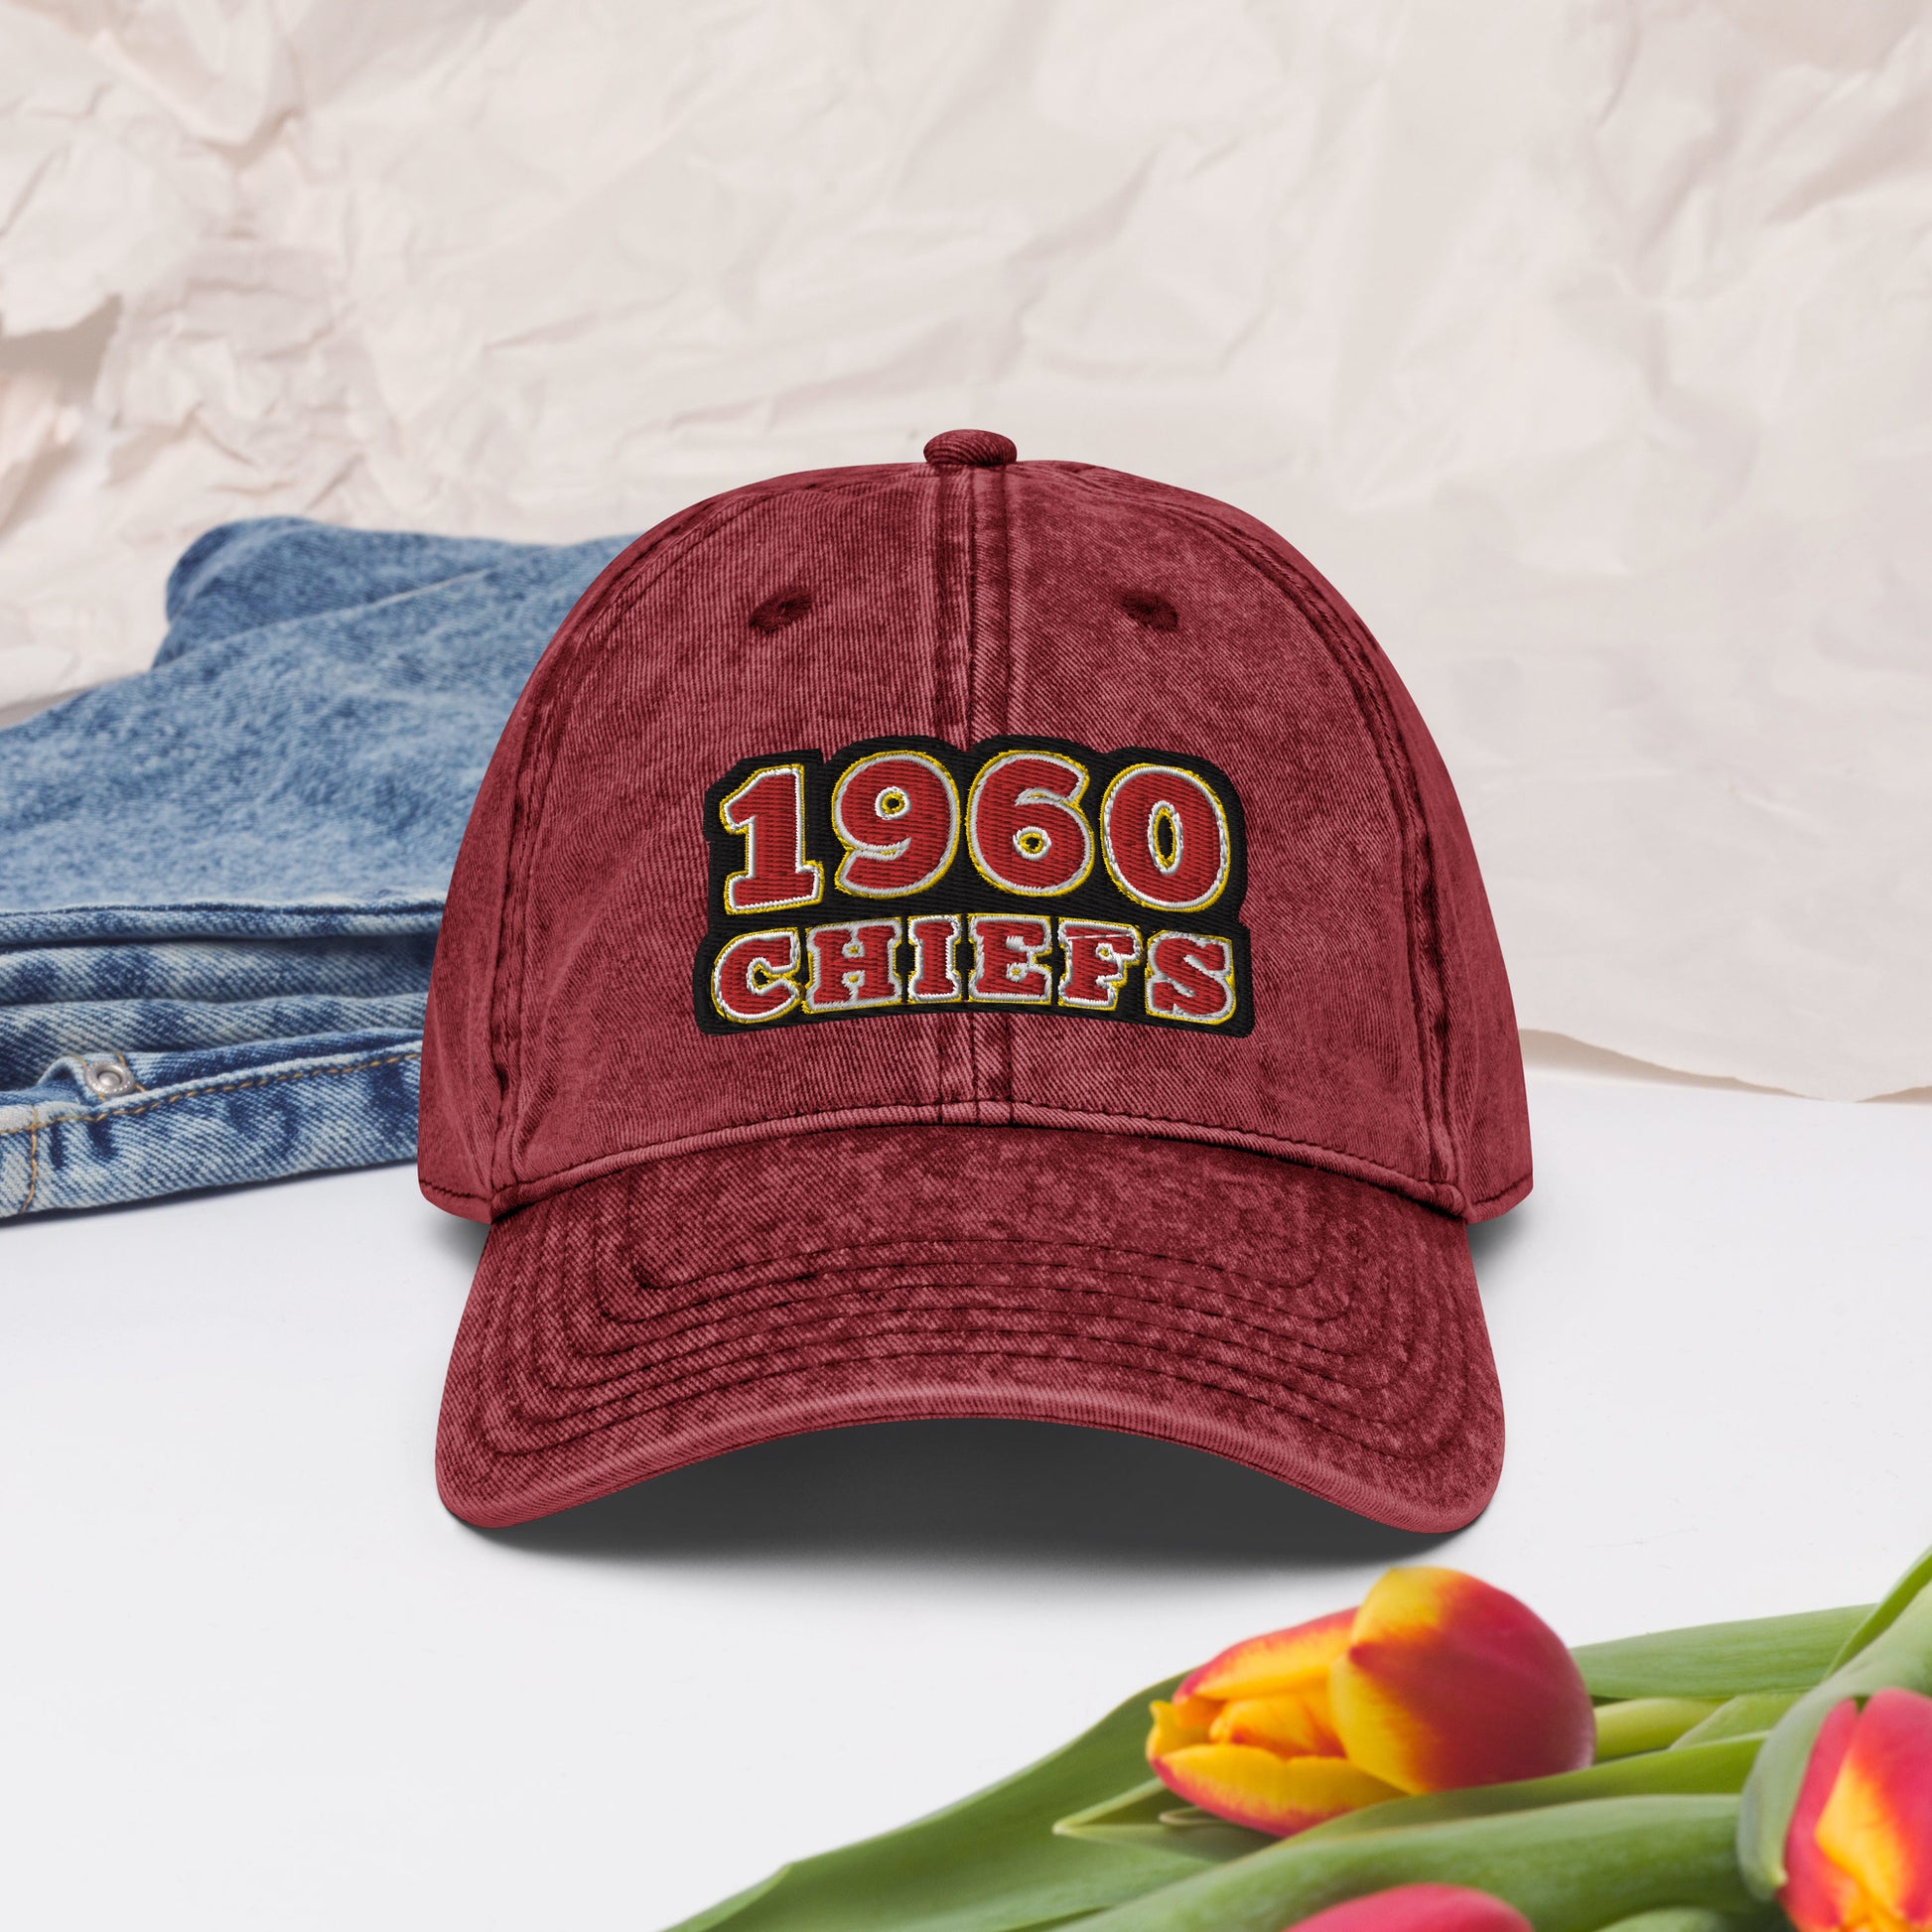 Kansas City Hat / Chiefs Hat / Kansas City Chiefs Vintage Cap Navy